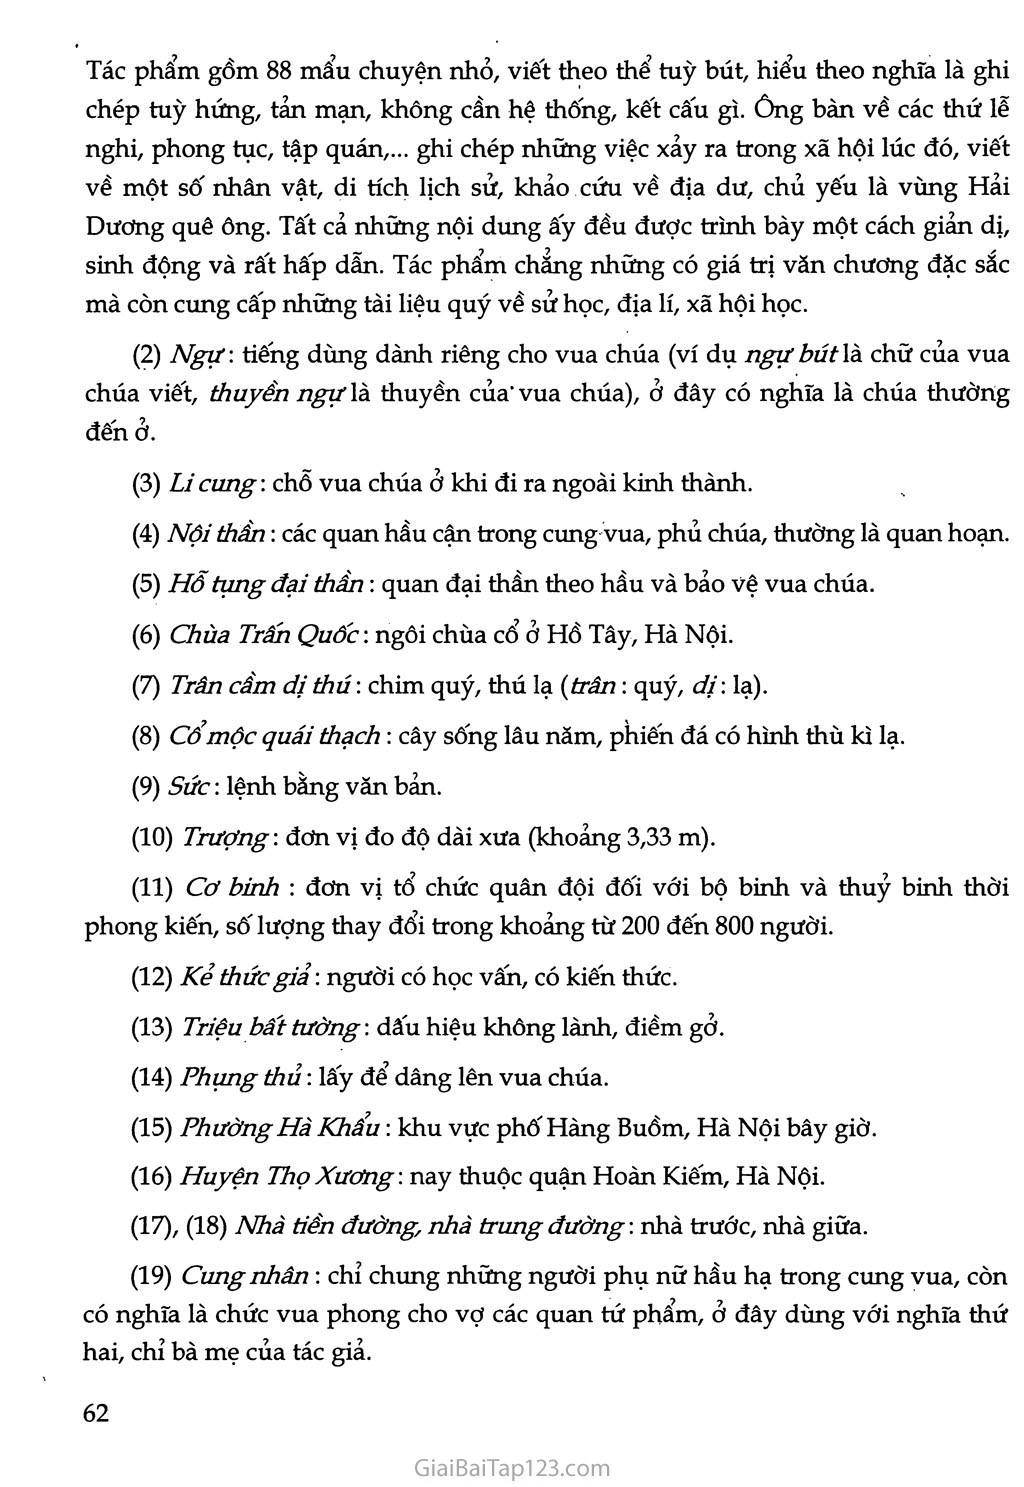 Chuyện cũ trong phủ chúa Trịnh (trích Vũ trung tuỳ bút) trang 3